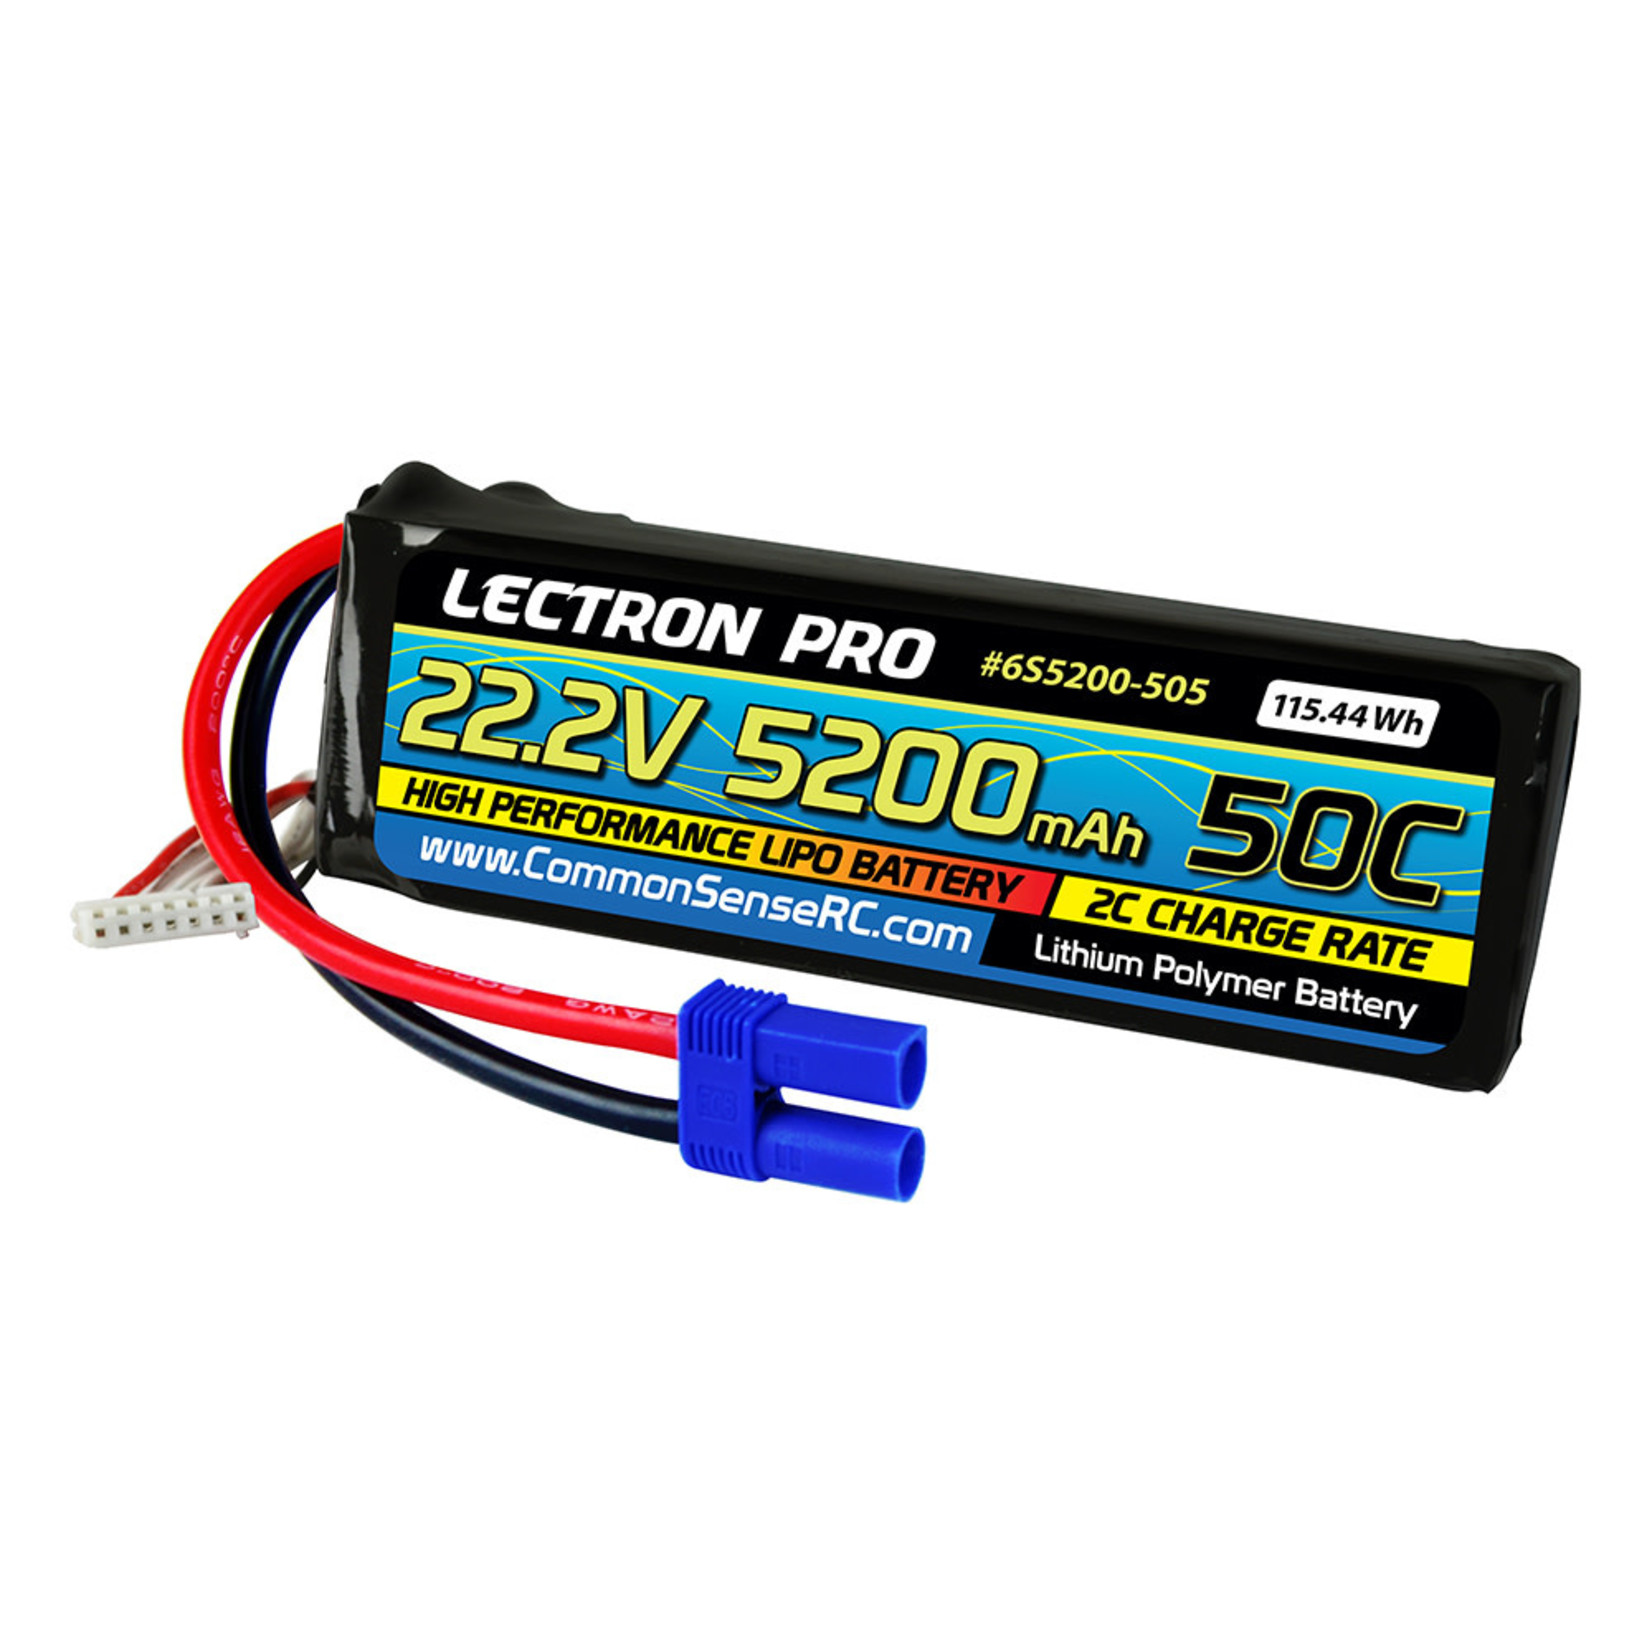 Lectron Pro 6S5200-505 Lectron Pro 22.2V 5200mAh 50C Lipo Battery EC5